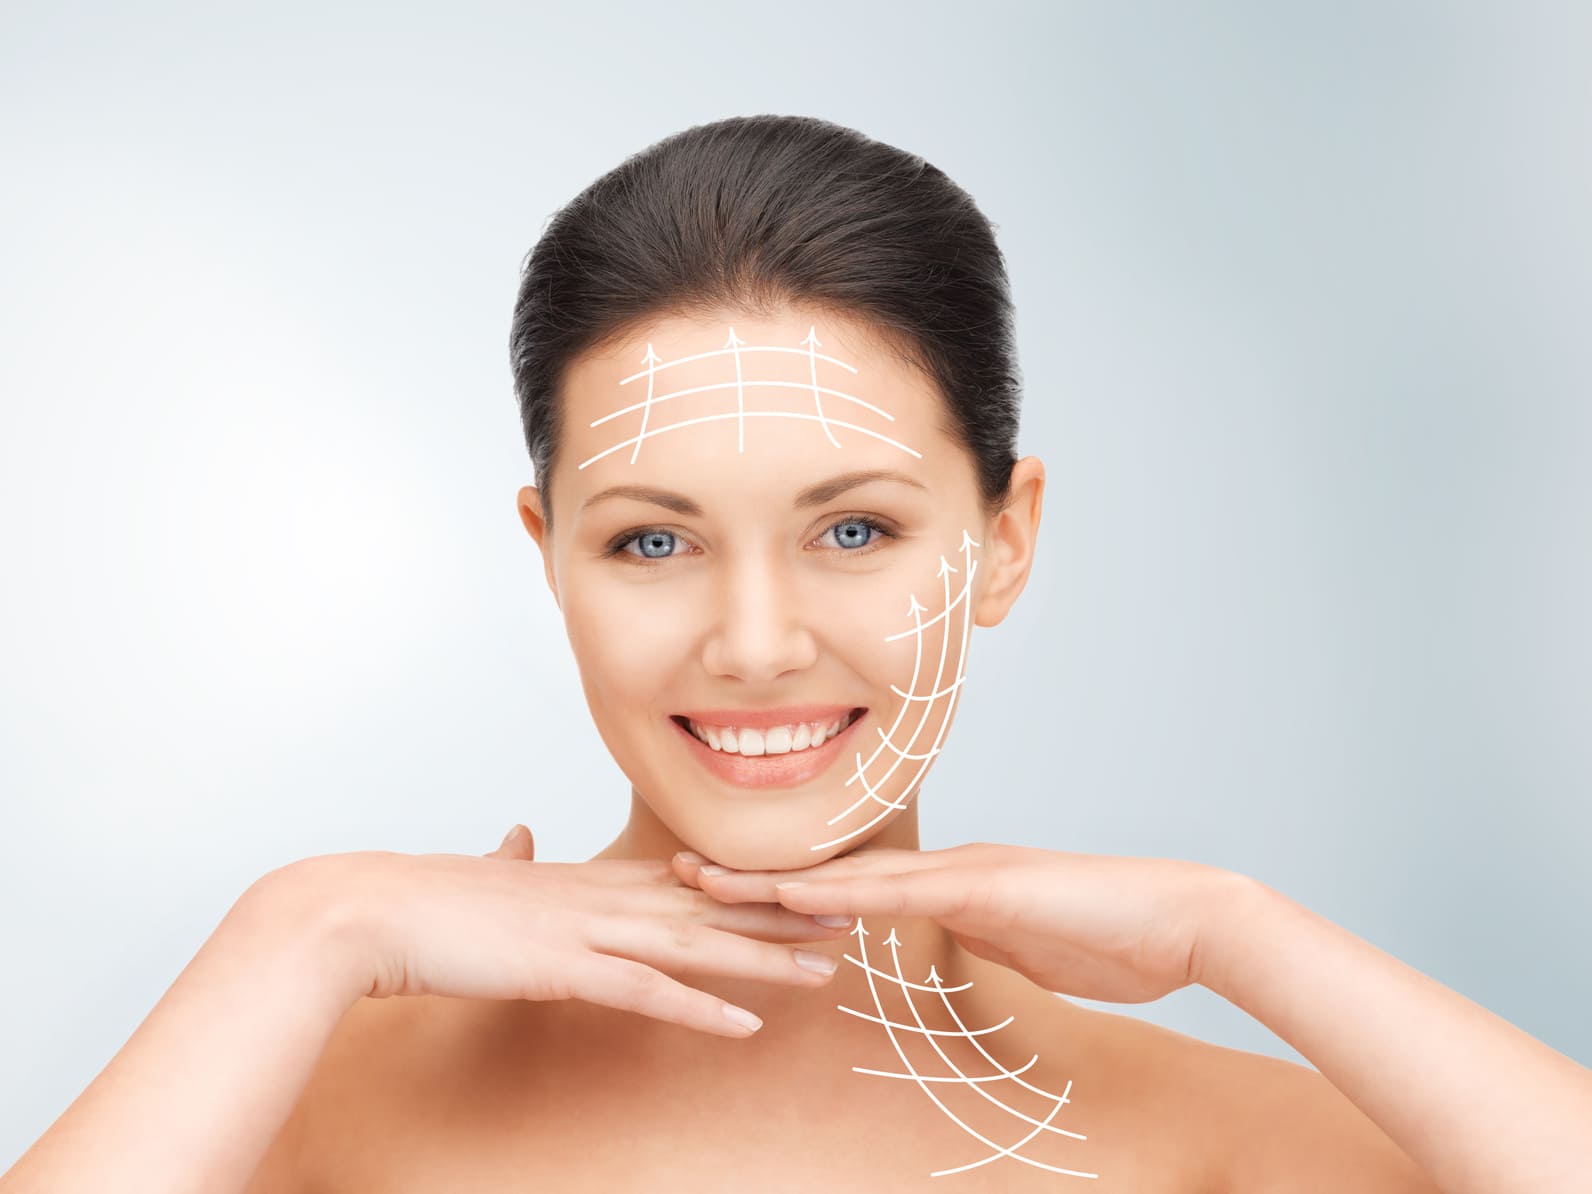 Пластическая операция по подтяжке лица зачастую комбинируется с процедурой по подтяжке шеи